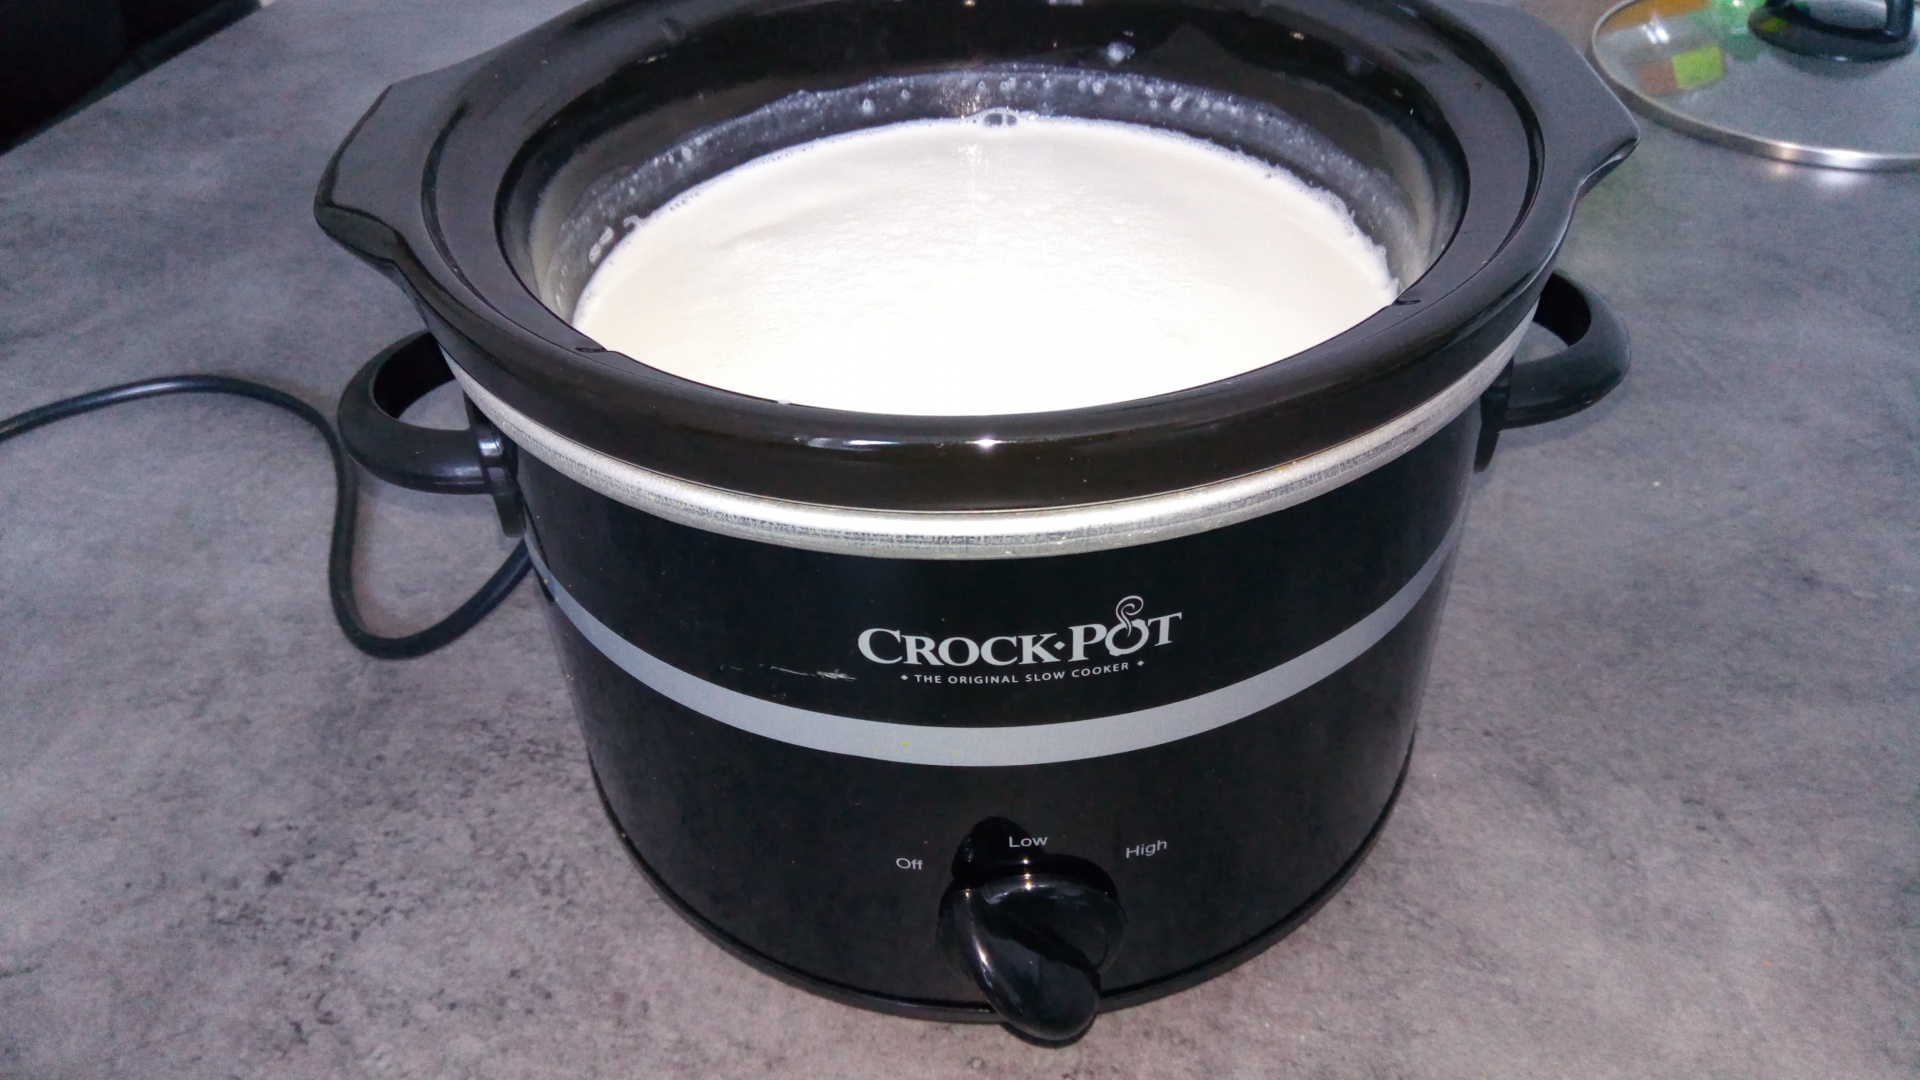 Branza proaspata de vaci la slow cooker Crock-Pot